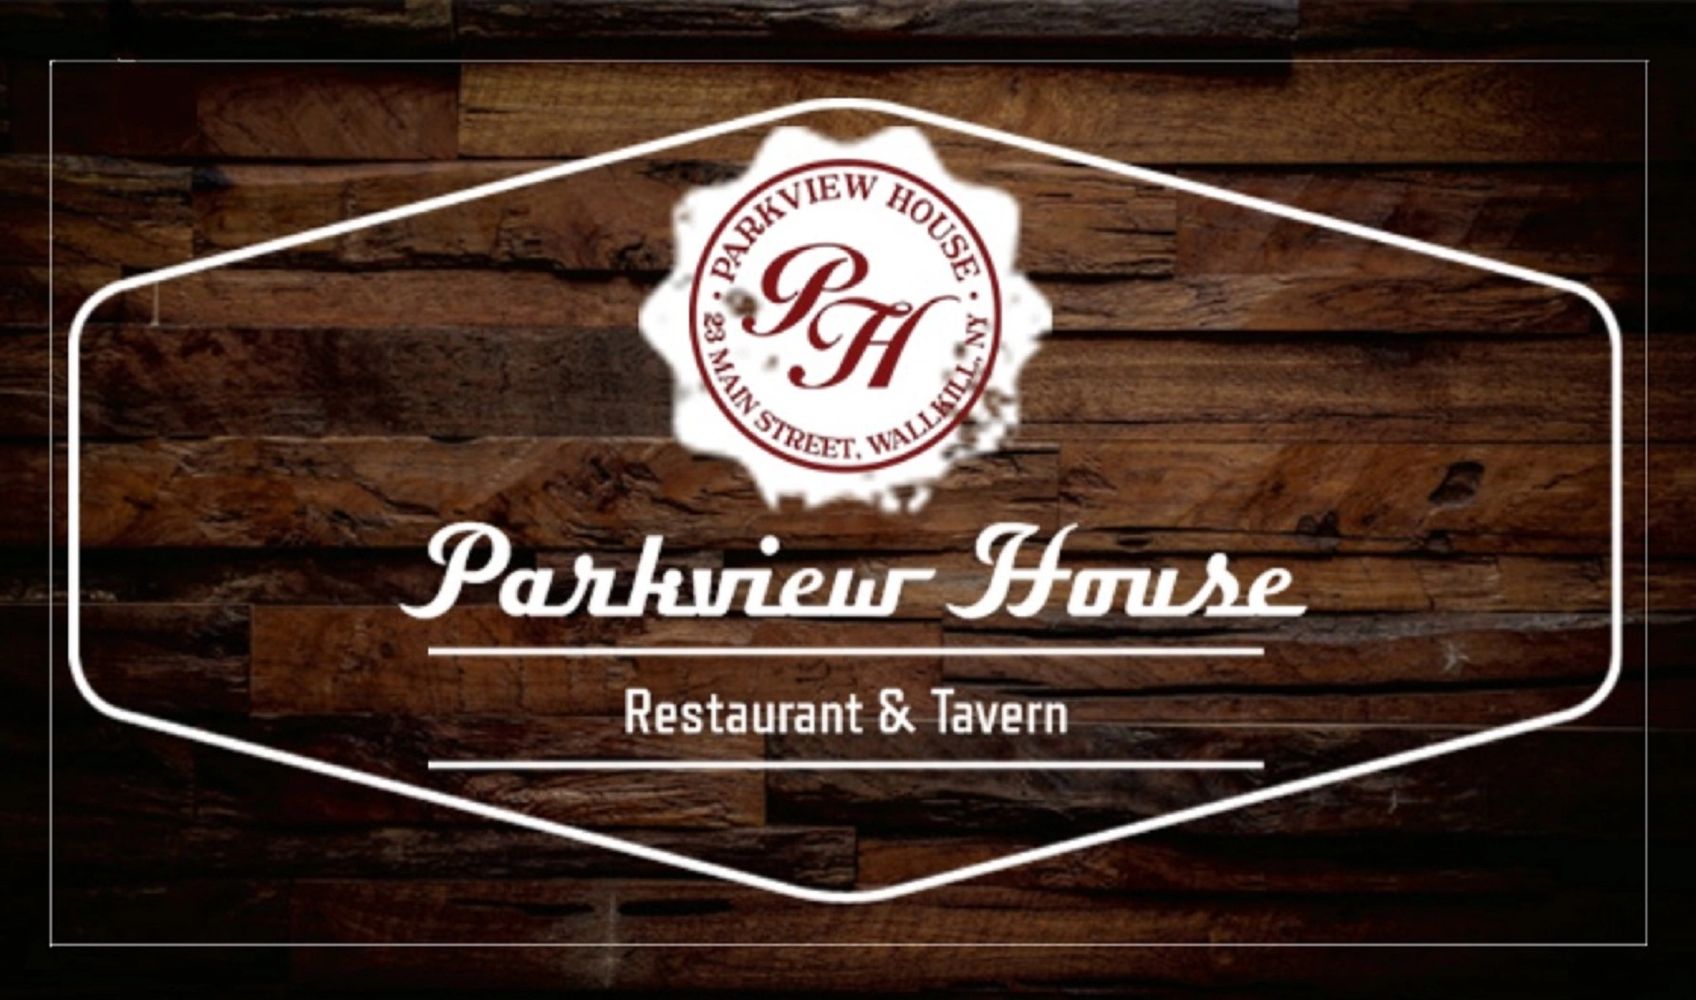 Parkview House Restaurant & Tavern